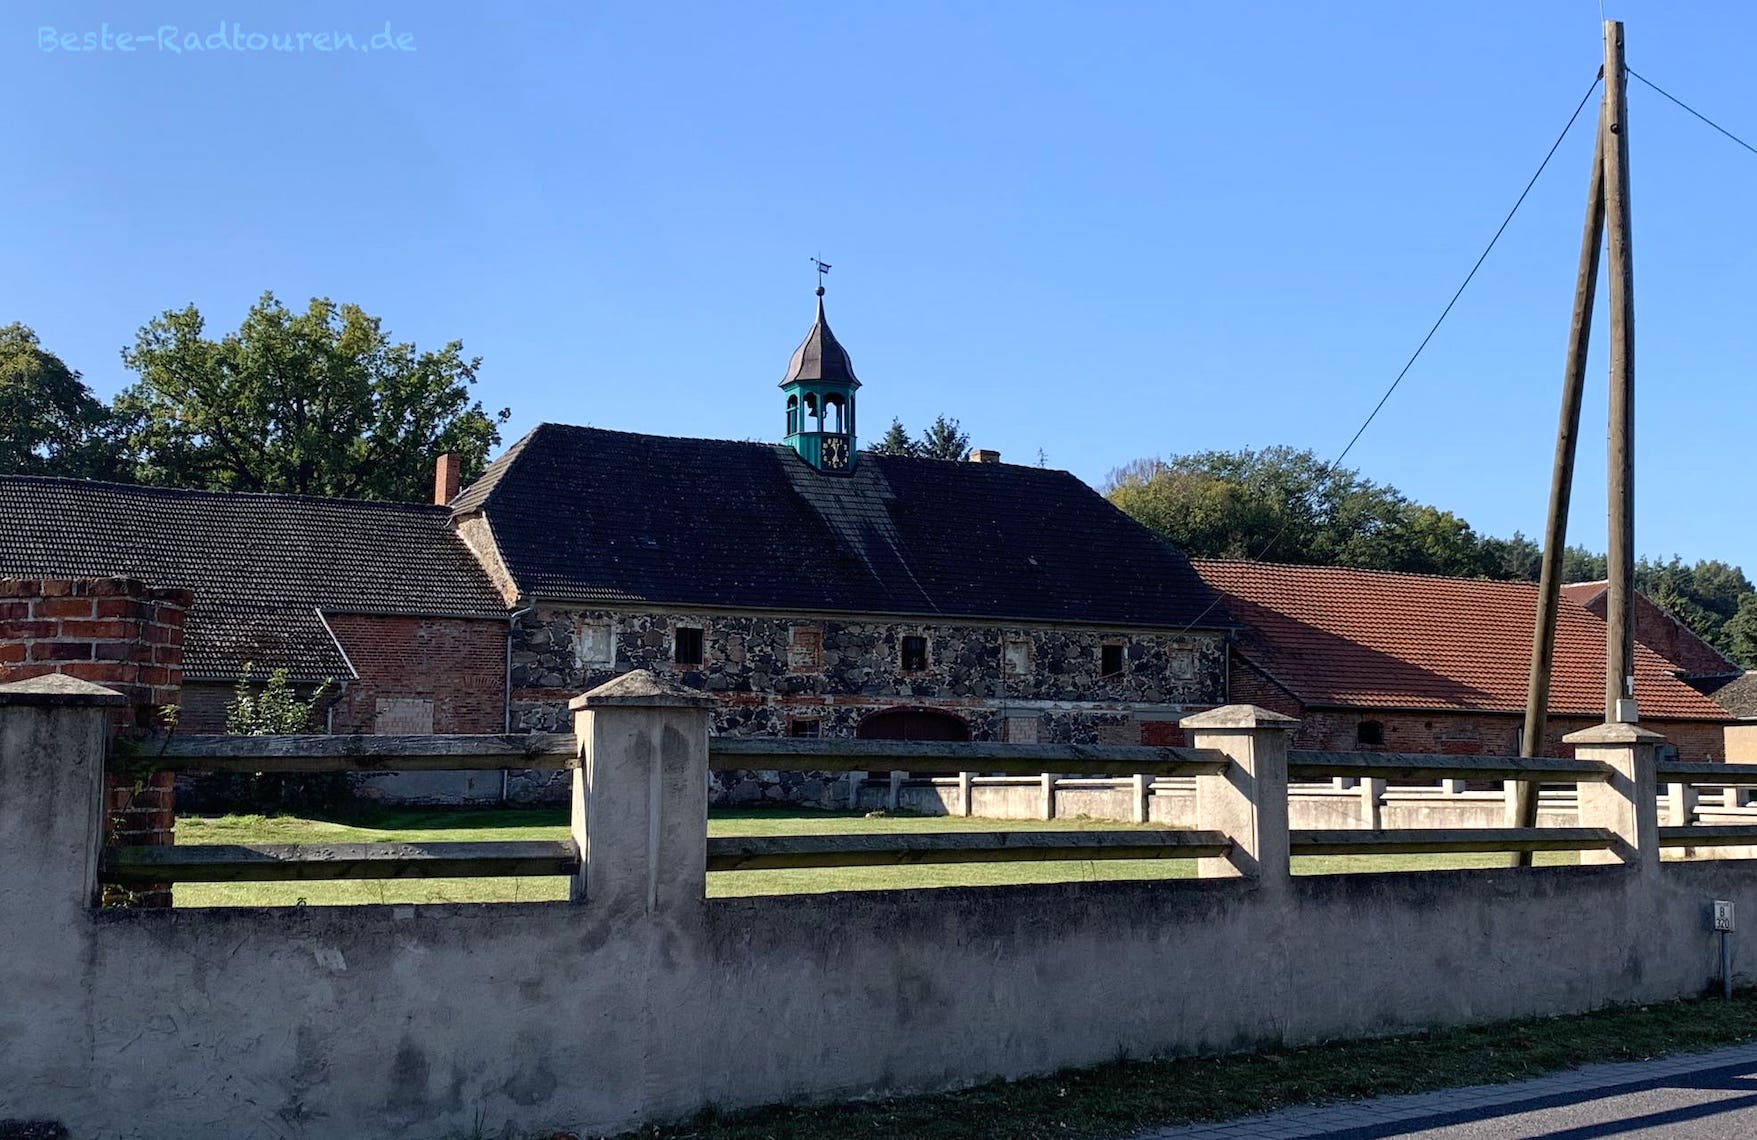 Altes Gehöft / Bauernhaus in Lübbinchen (Ort zwischen Pinnow und Schenkendöbern)